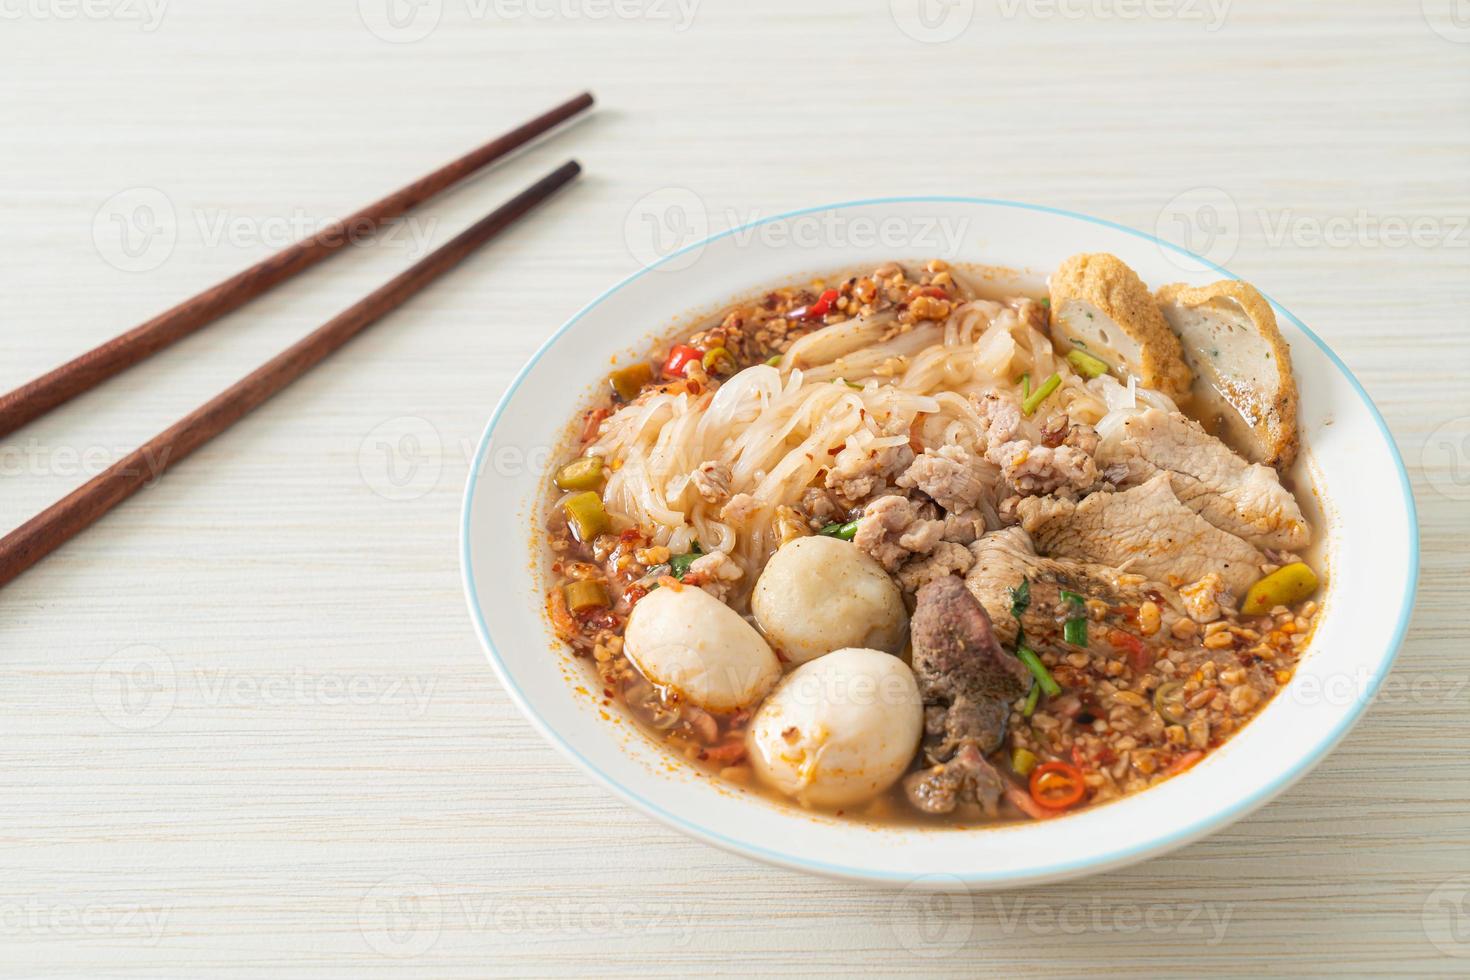 macarrão com carne de porco e almôndegas em sopa apimentada ou macarrão tom yum em estilo asiático foto